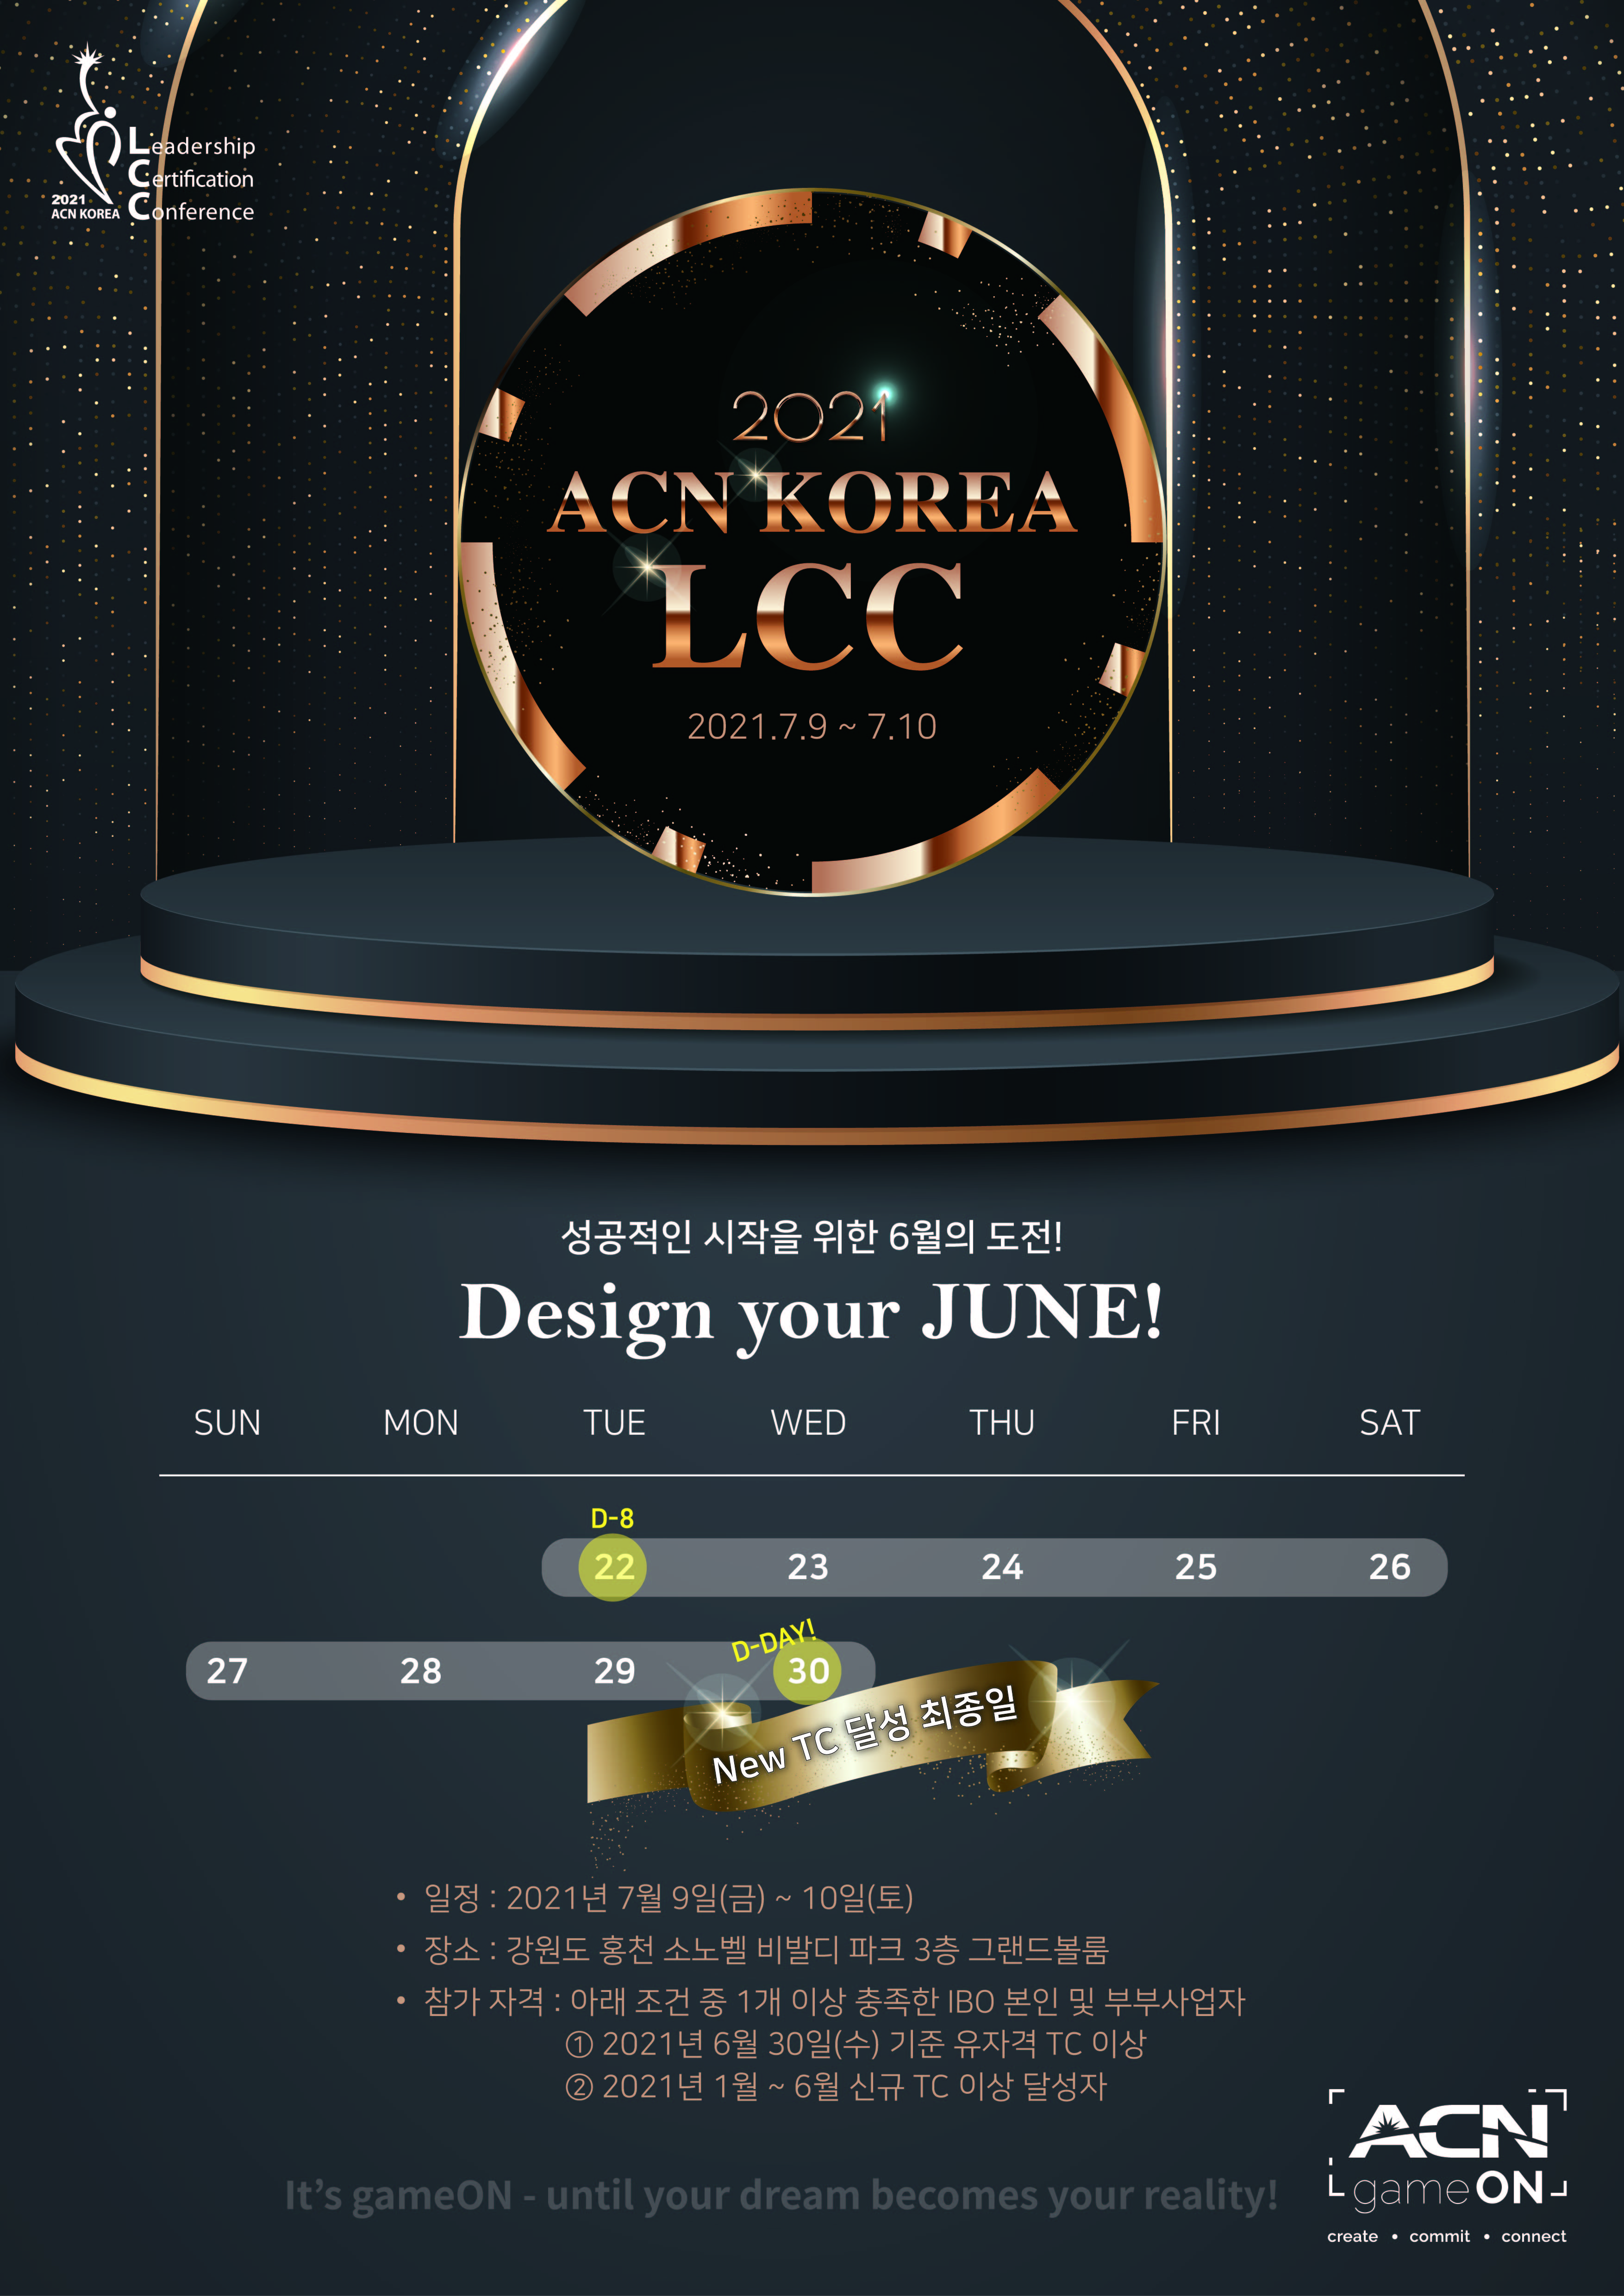 2021 ACN KOREA LCC - Design your JUNE!